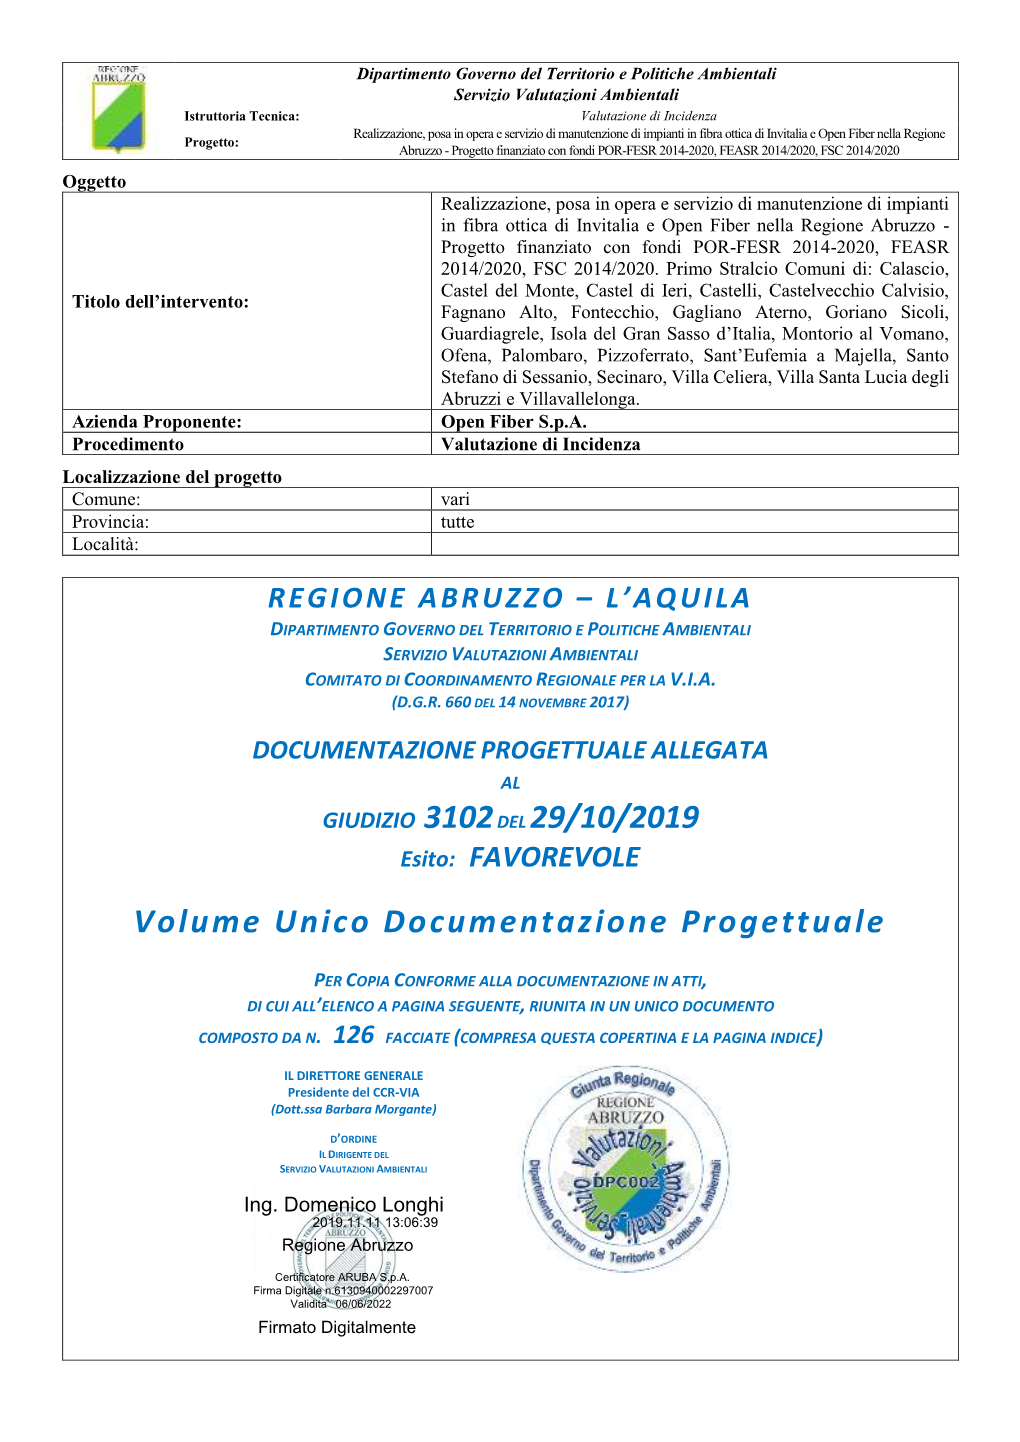 GIUDIZIO 3102DEL 29/10/2019 Volume Unico Documentazione